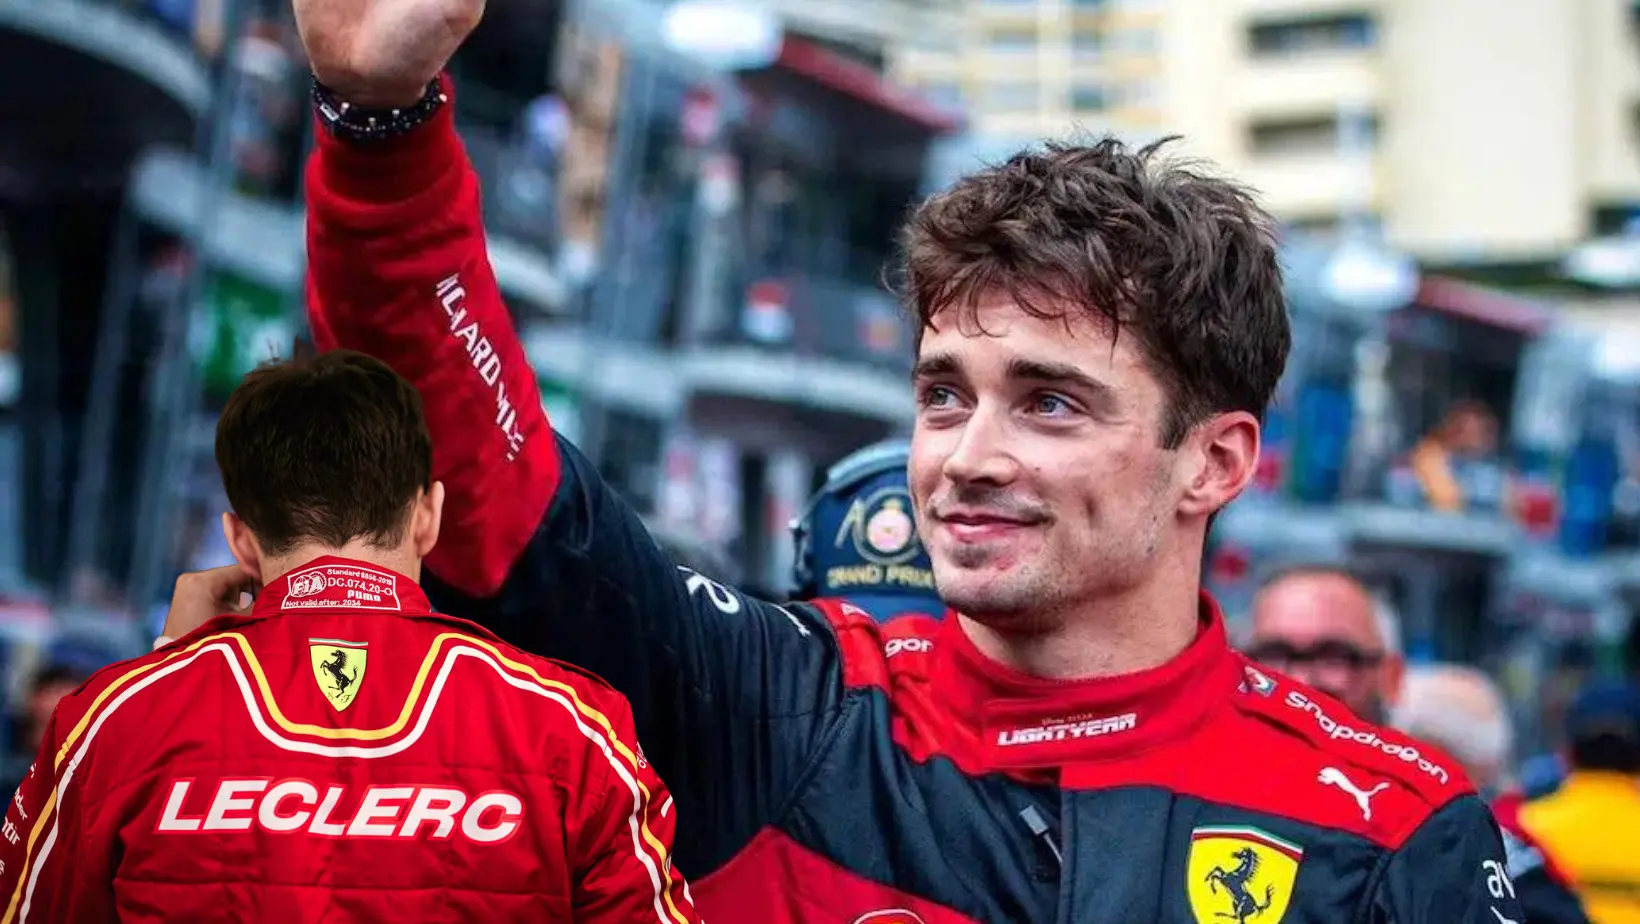 Charles Leclerc gana el Gran Premio de Mónaco